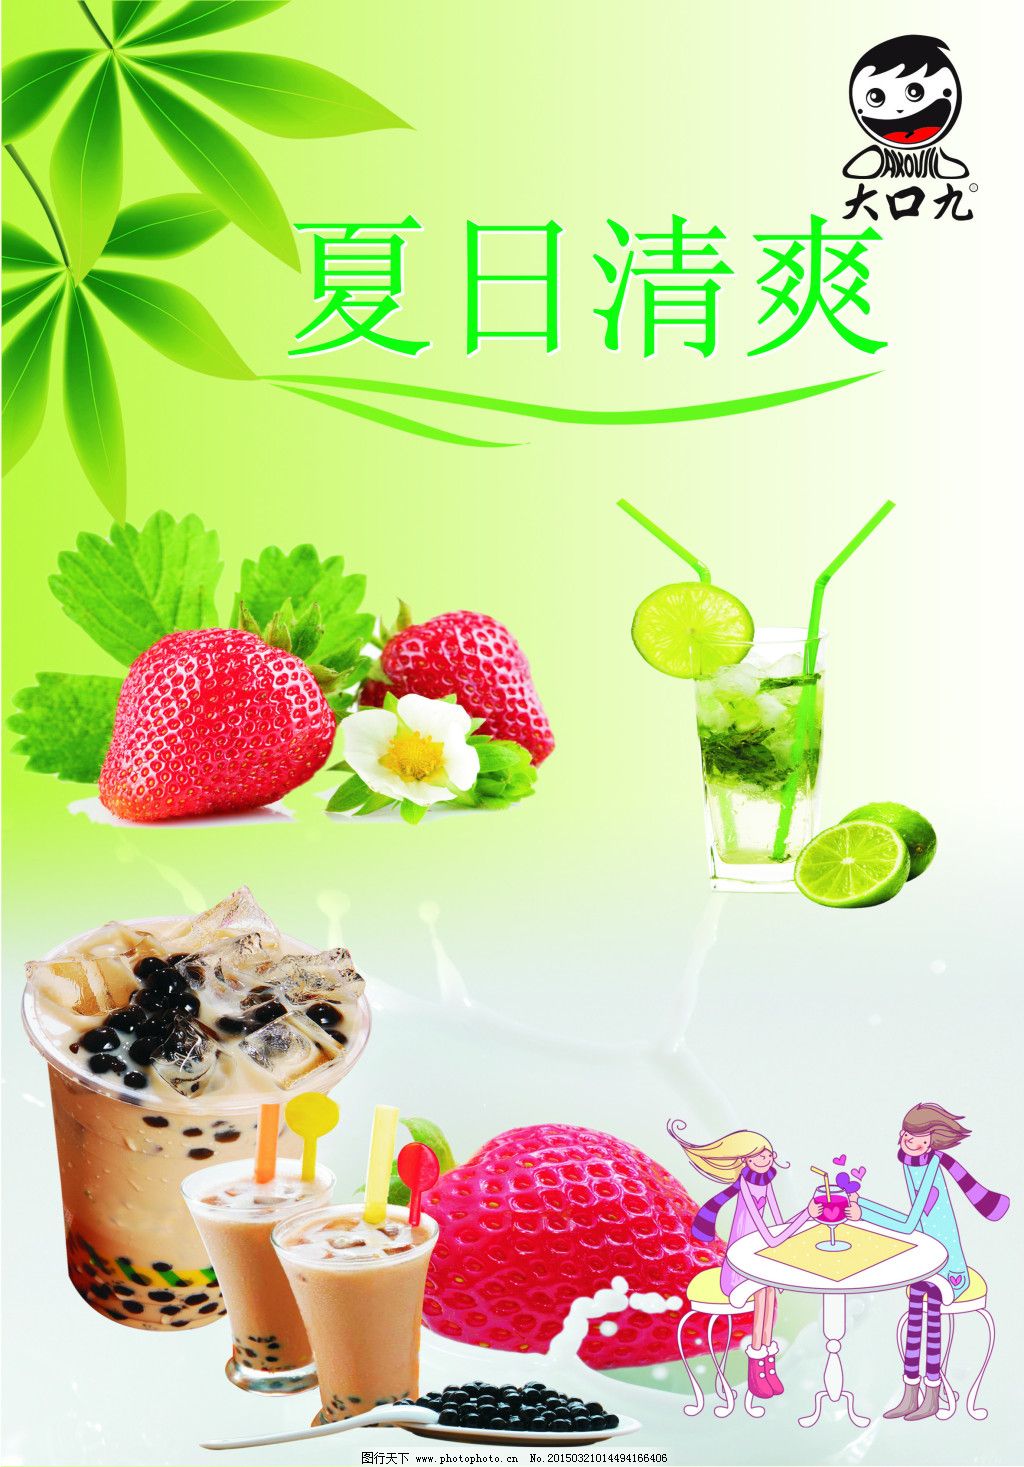 大口九奶茶CDR,背景图 草莓 广告设计 宁檬 原